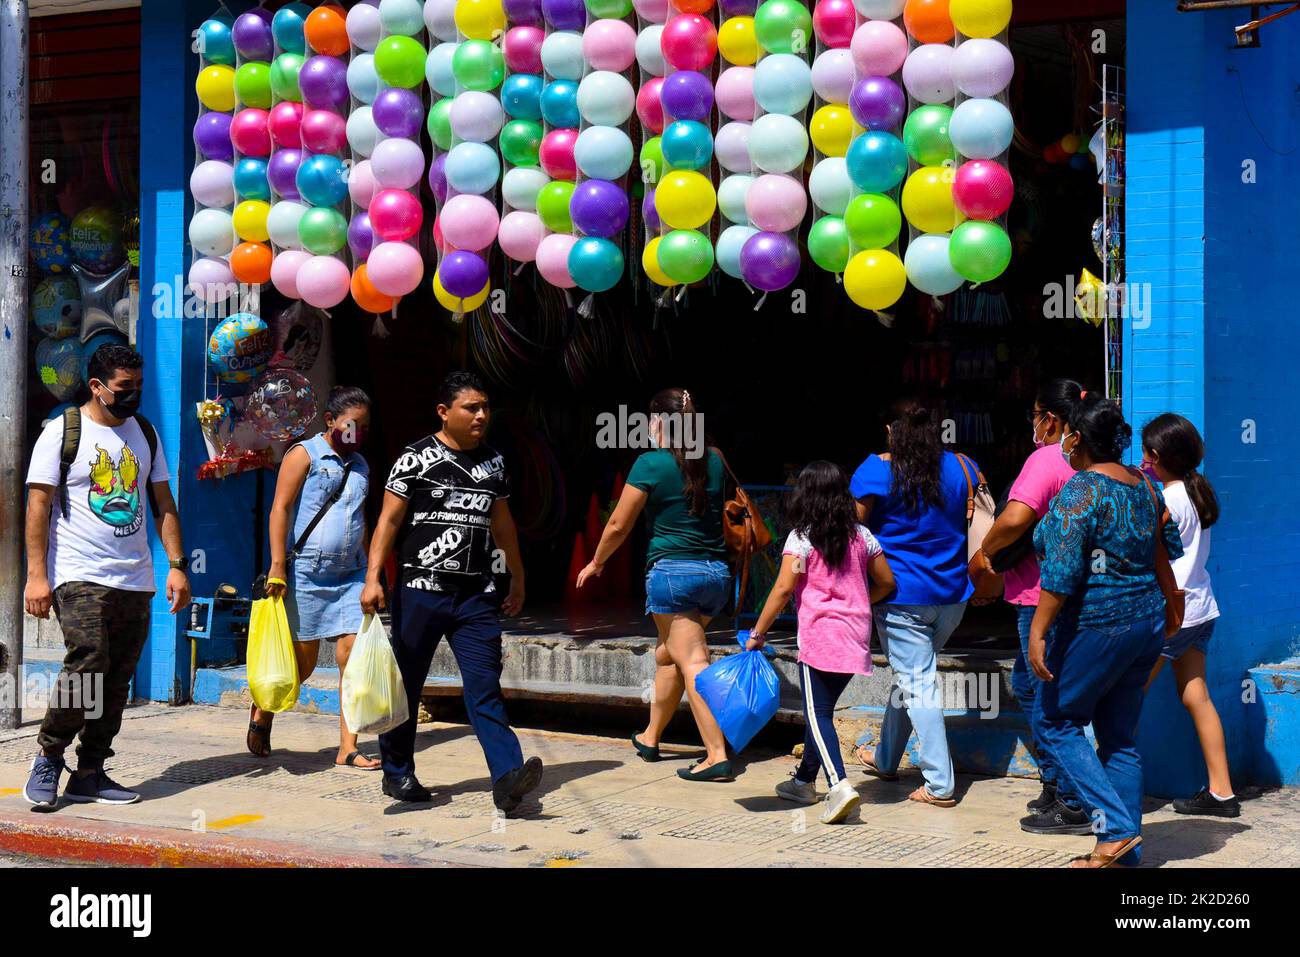 Gente caminando frente a una tienda de venta de globos en el centro de Mérida, méxico Foto de stock